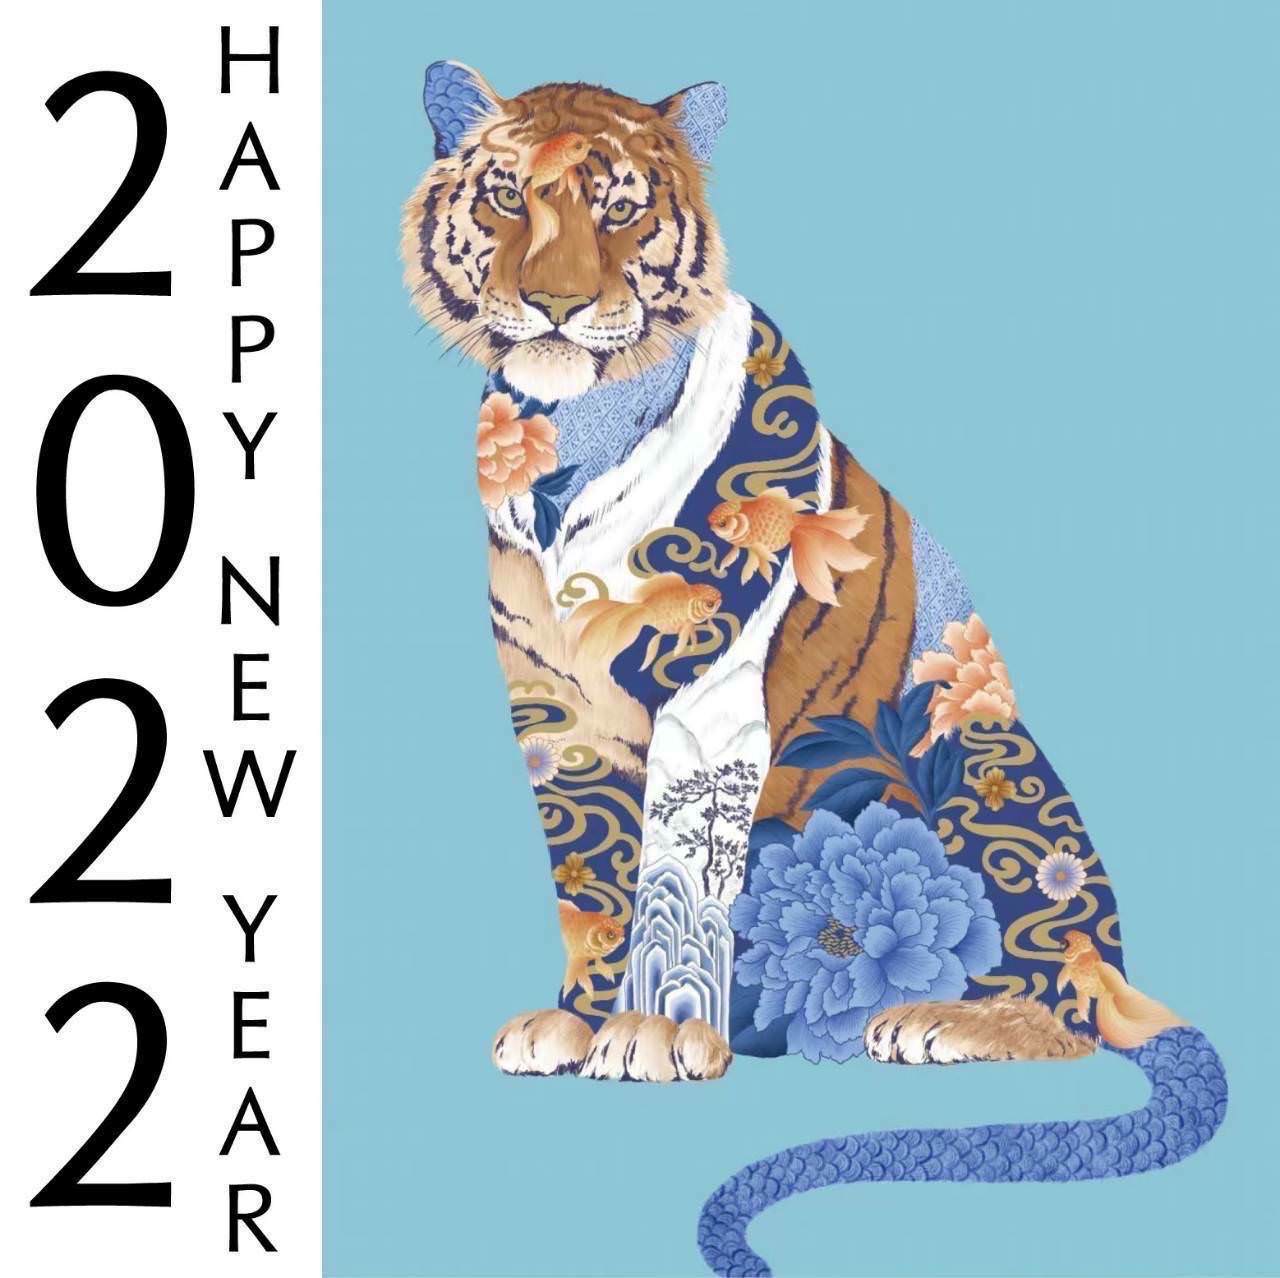 【新年祝賀語錄】祝您2022虎年行大運 虎虎生風 如虎添億 新年快樂 Happy new year of Tiger